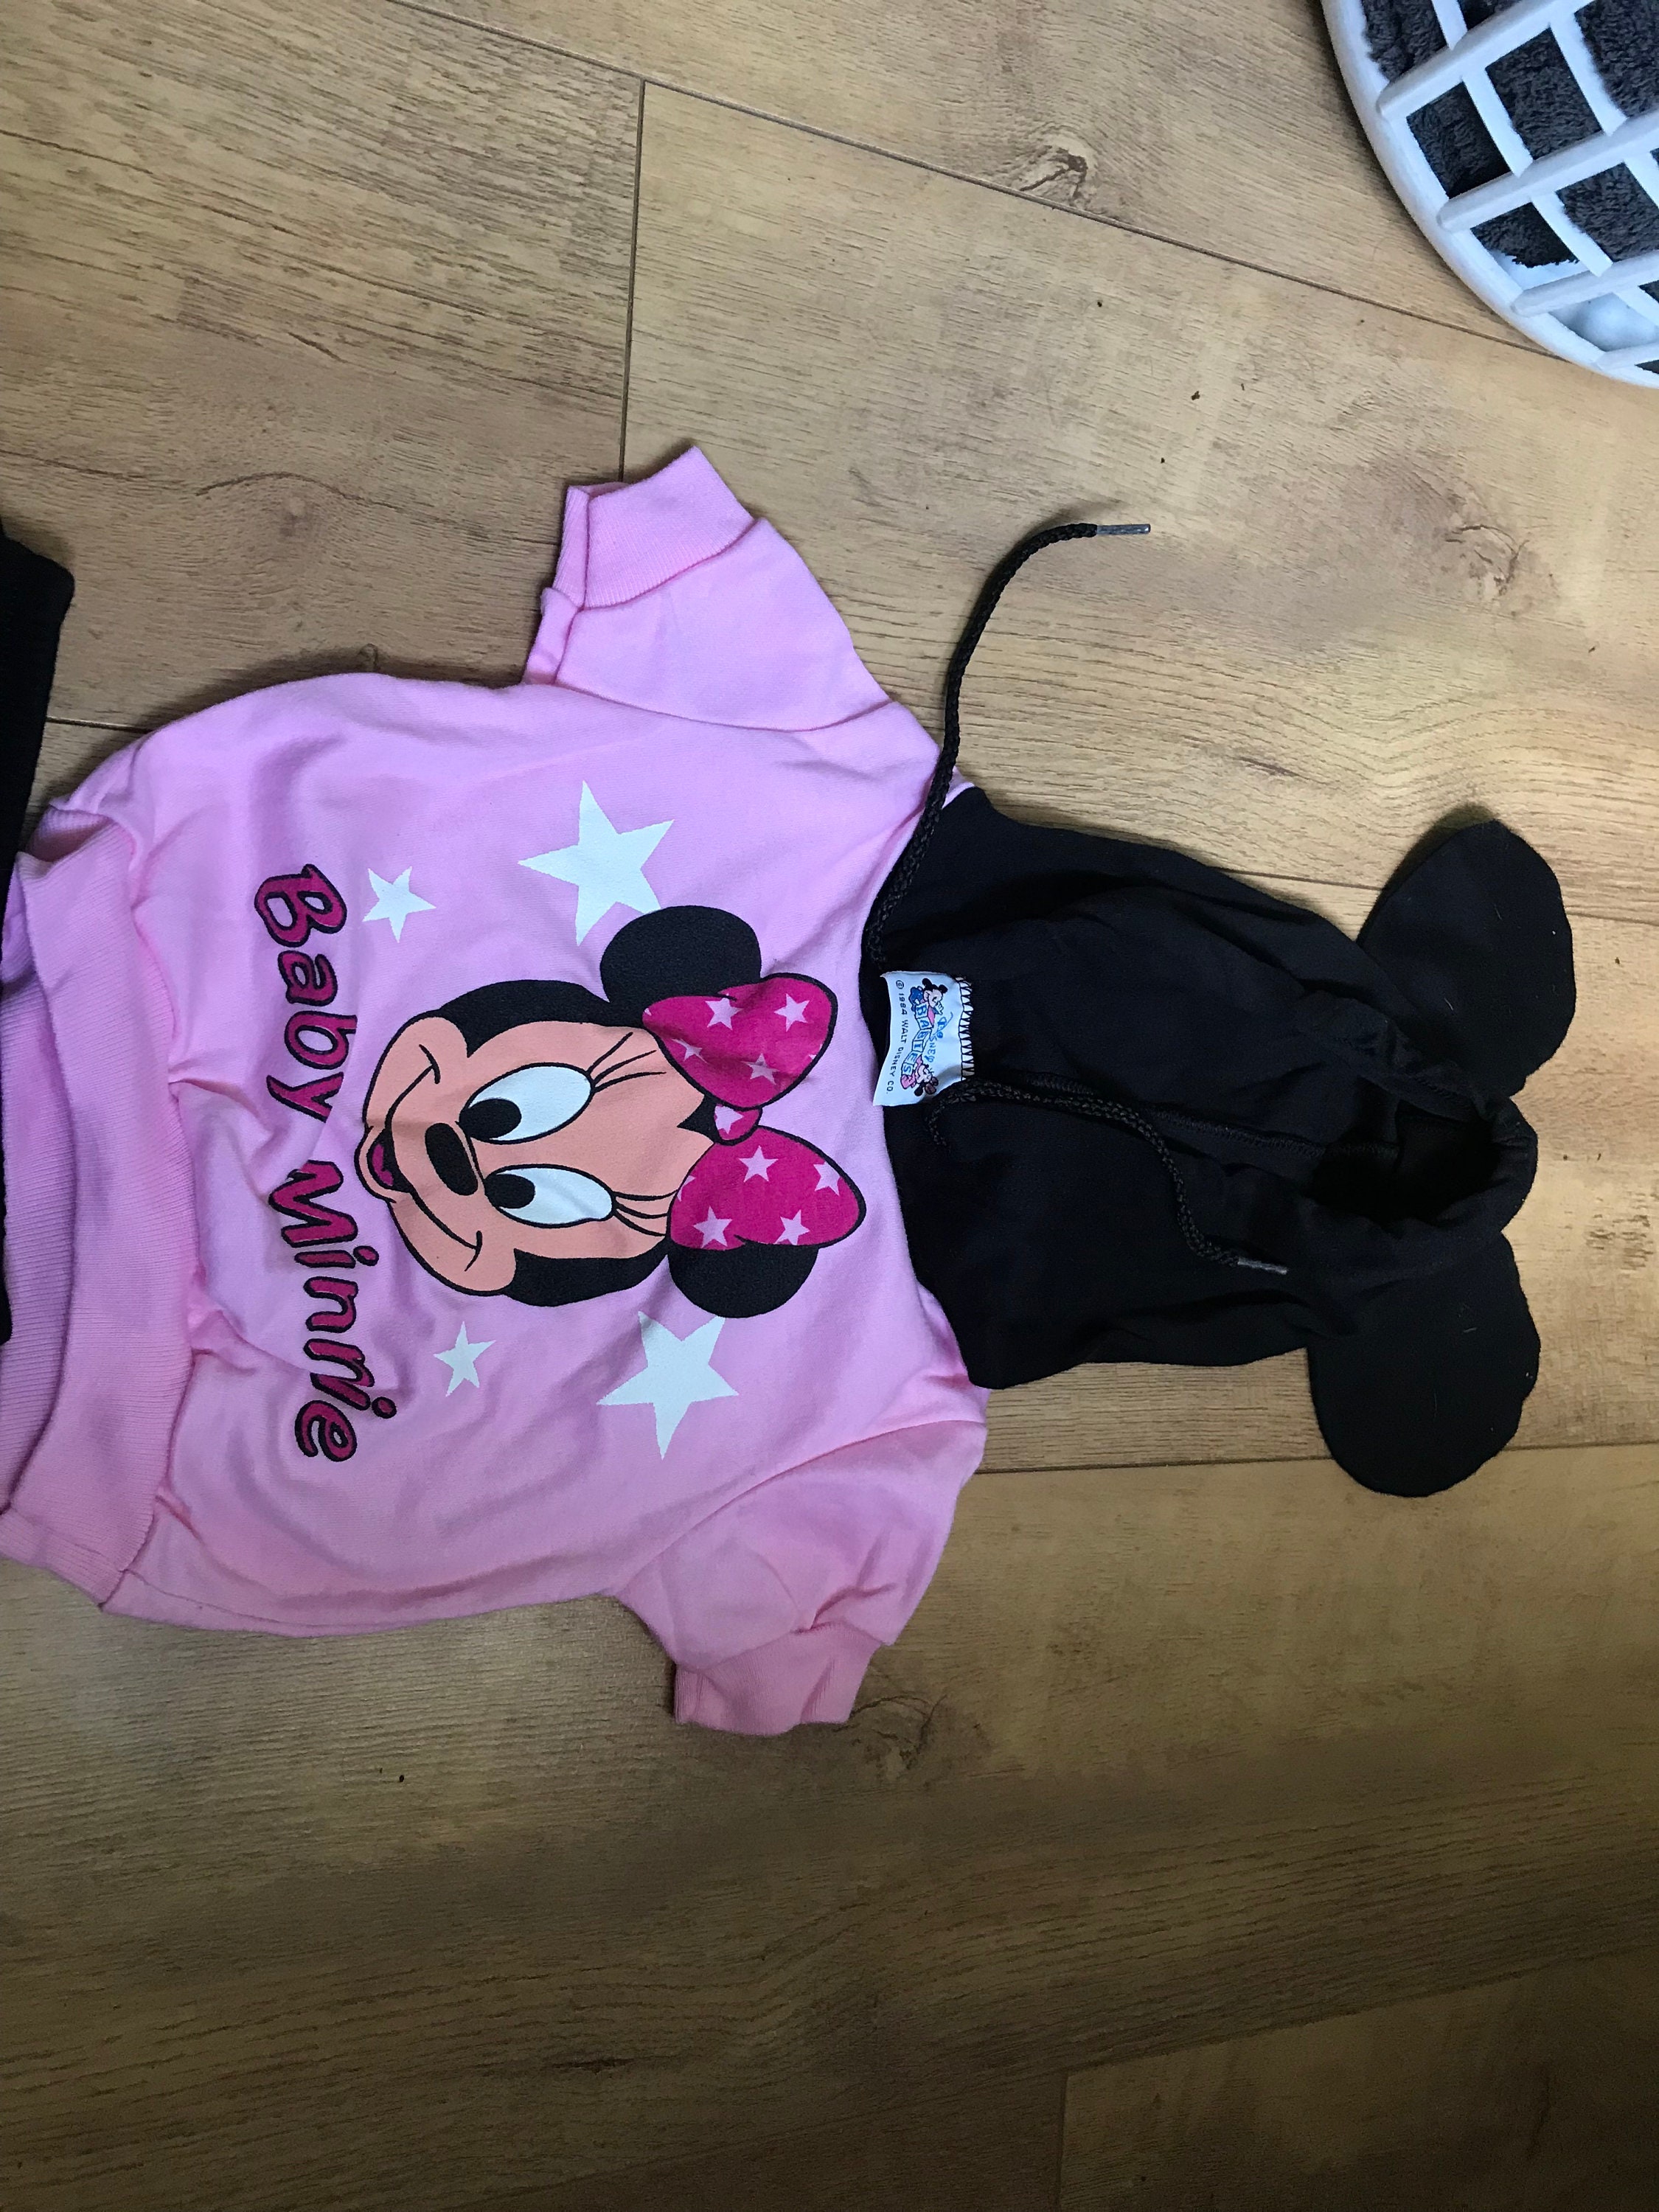 Retro Infant Disney Vintage 12 mo Hoodie with Minnie on Ice Skates Kleding Meisjeskleding Babykleding voor meisjes Hoodies & Sweatshirts 